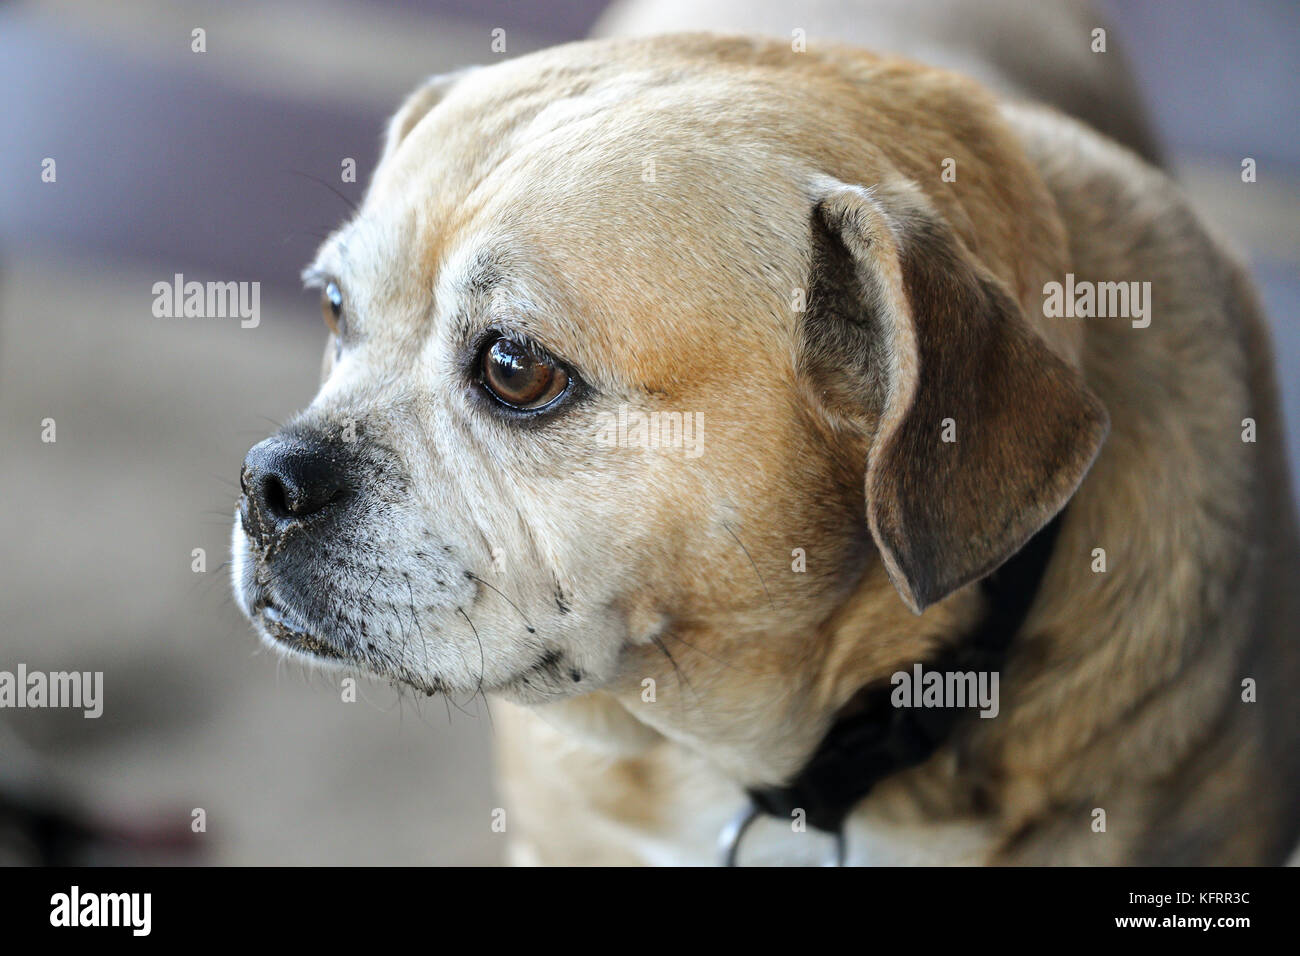 Puggle, Mixed breed of Pug and Beagle,staring at something at a dog park Stock Photo